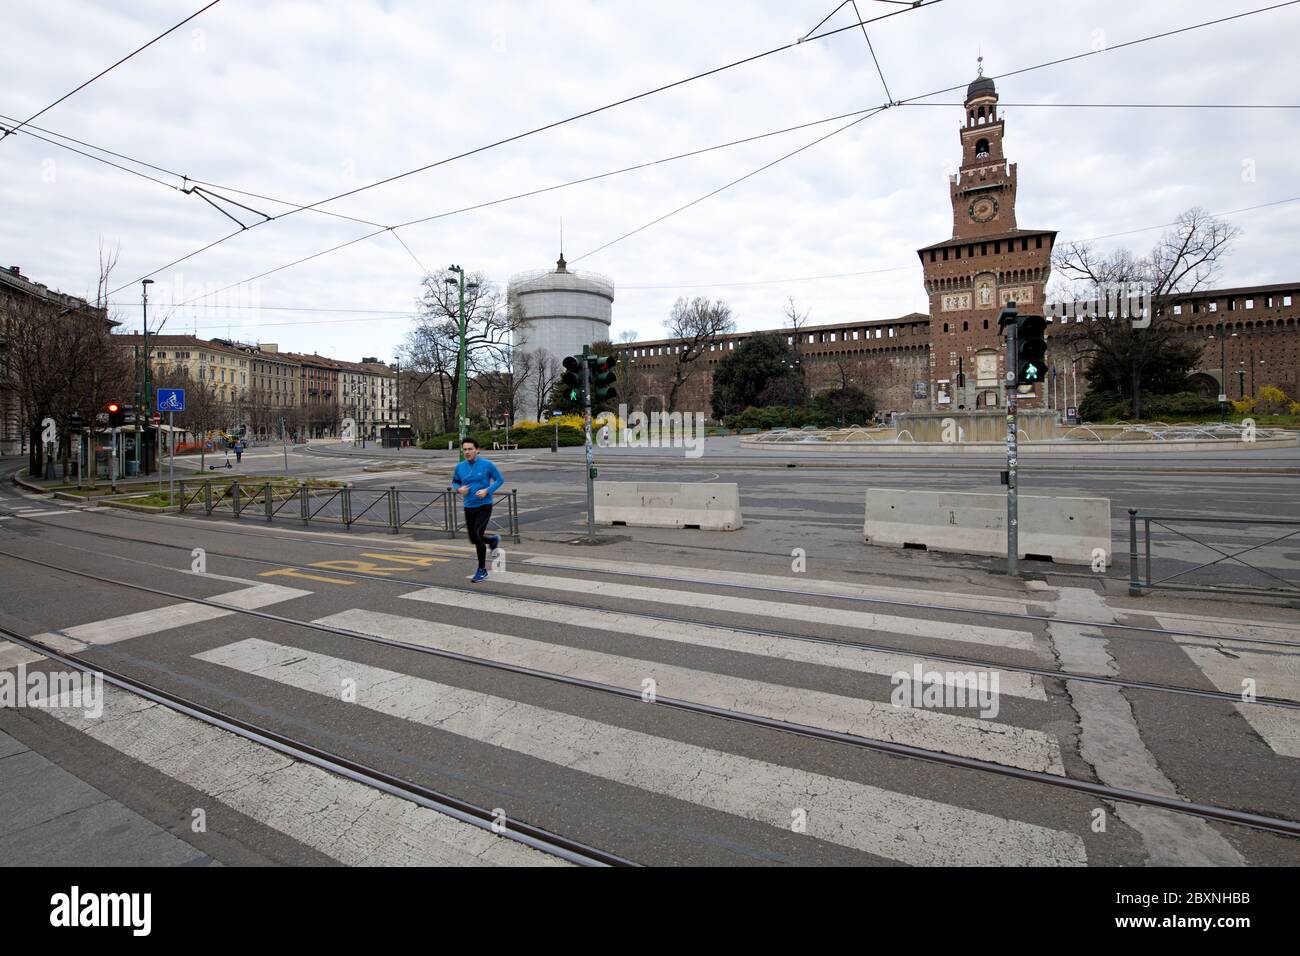 Strade vuote del centro di Milano a causa della pandemia del Covid-19, Foto Stock